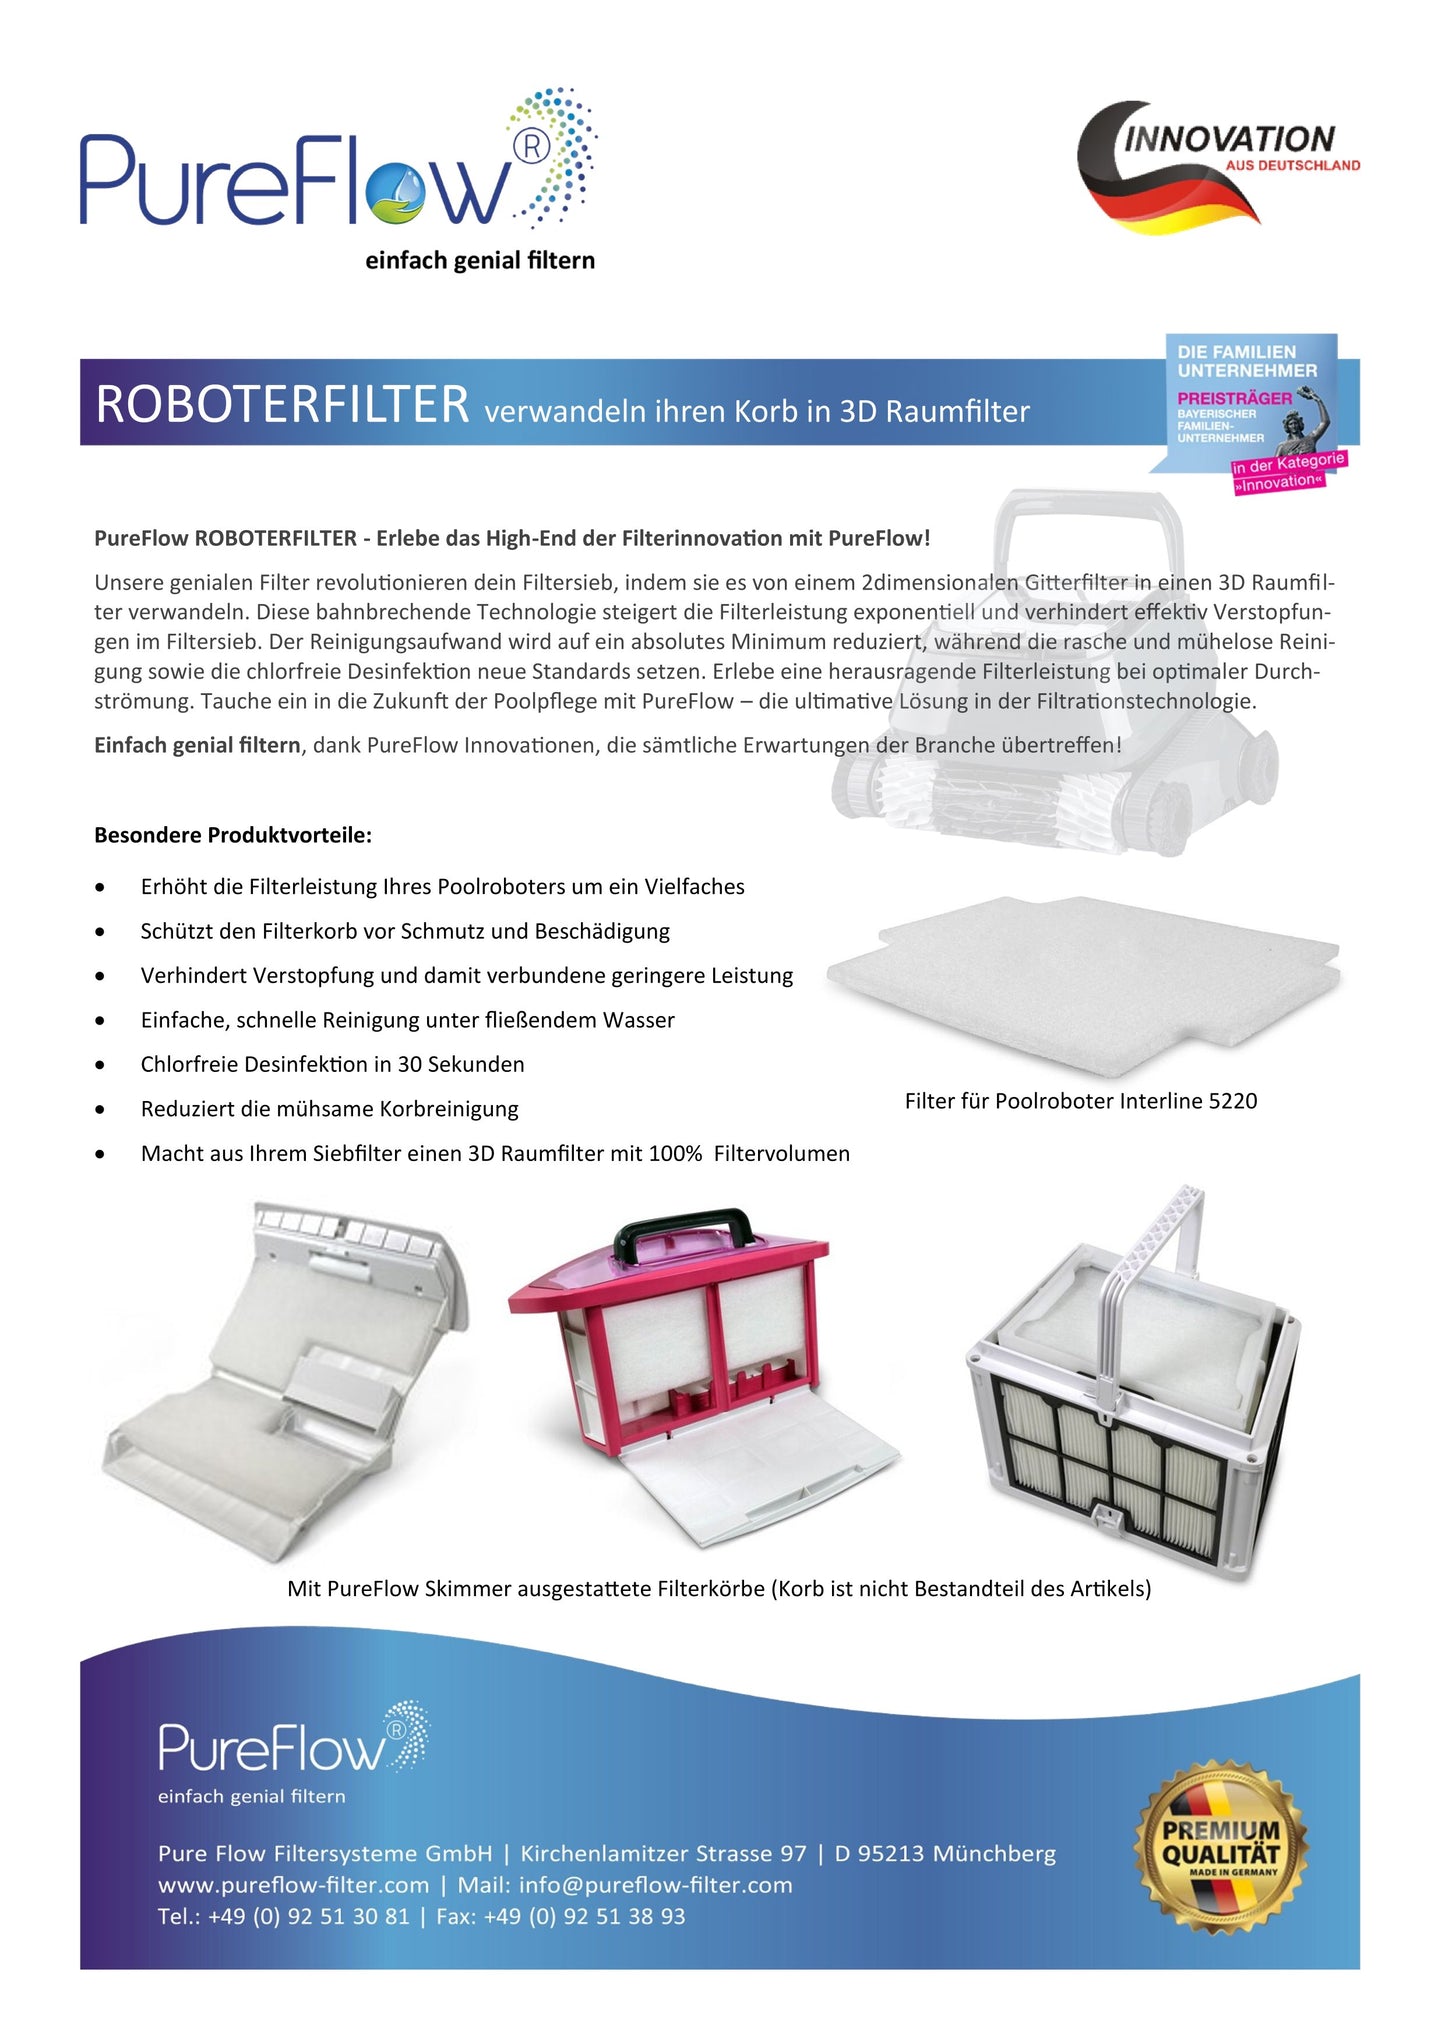 PureFlow ROBOTERFILTER: DOLPHIN E10 - E25. 3D-Raumfilter mit 100 % Filtervolumen, chlorfreie Desinfektion. Feinstfilter für herausragende Filterleistung und ein leistungsstarkes Filtersystem. Entfernt feinsten Schmutz und Schwebstoffe.